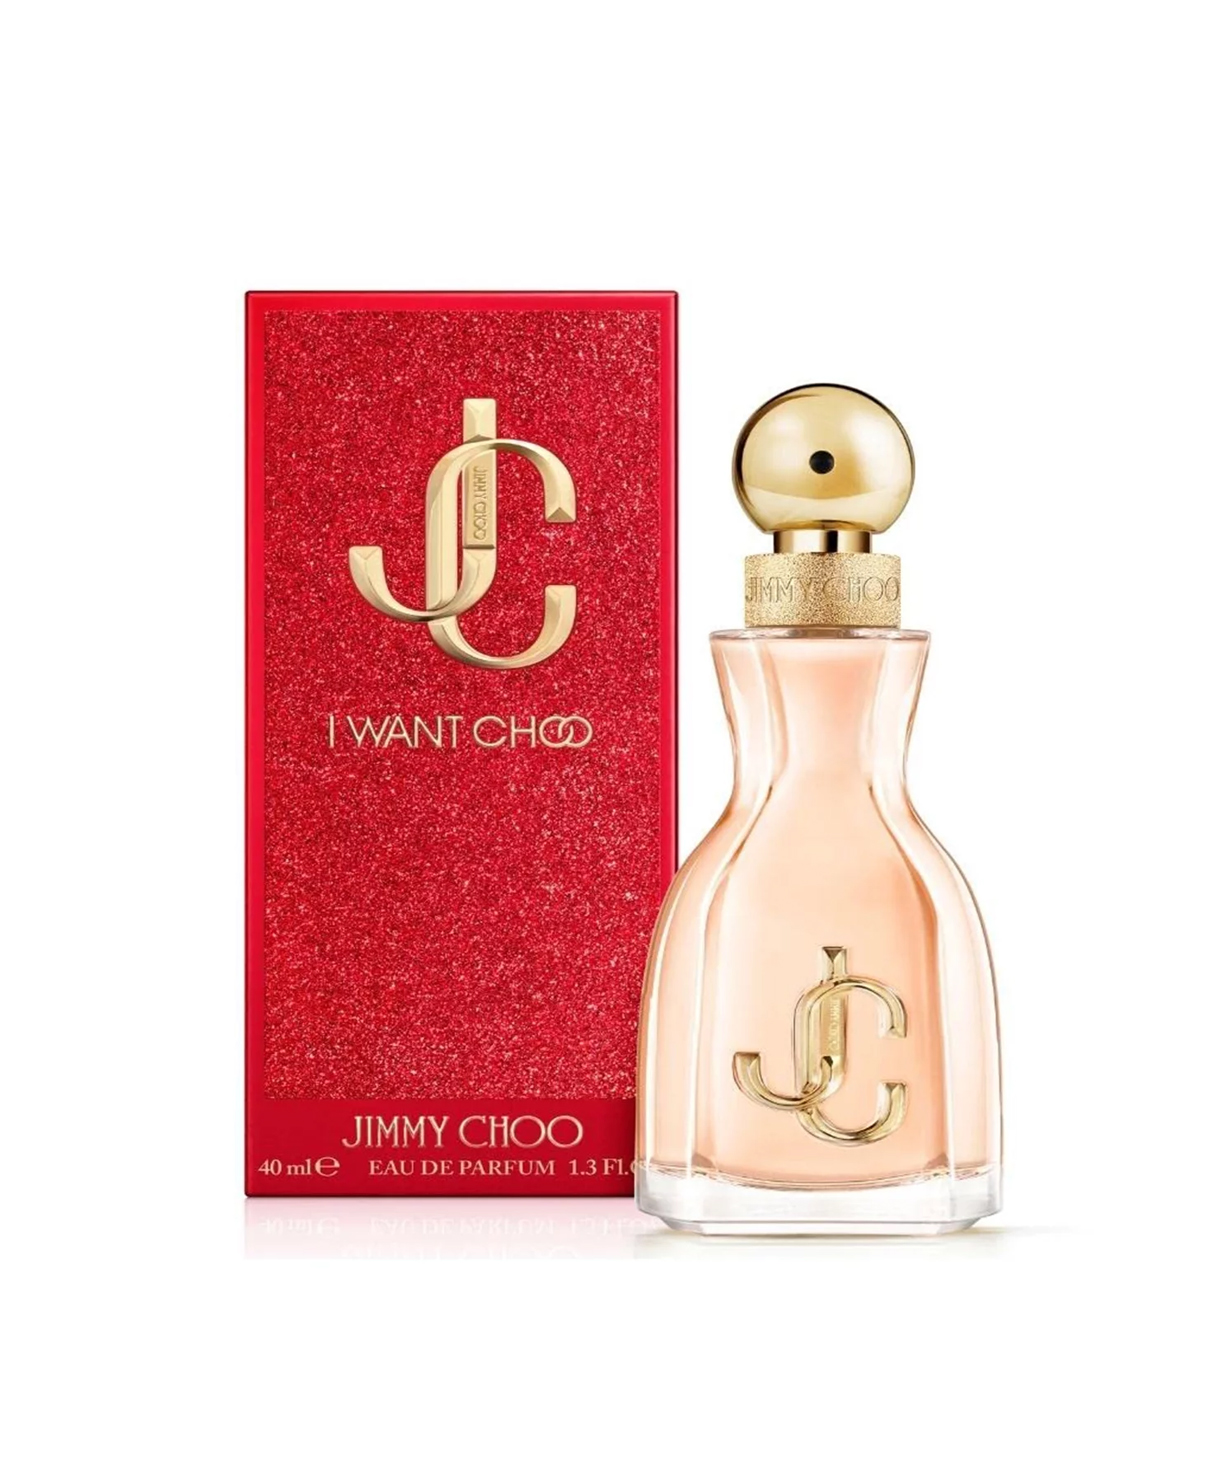 Perfume «Jimmy Choo» I Want Choo, for women, 40 ml